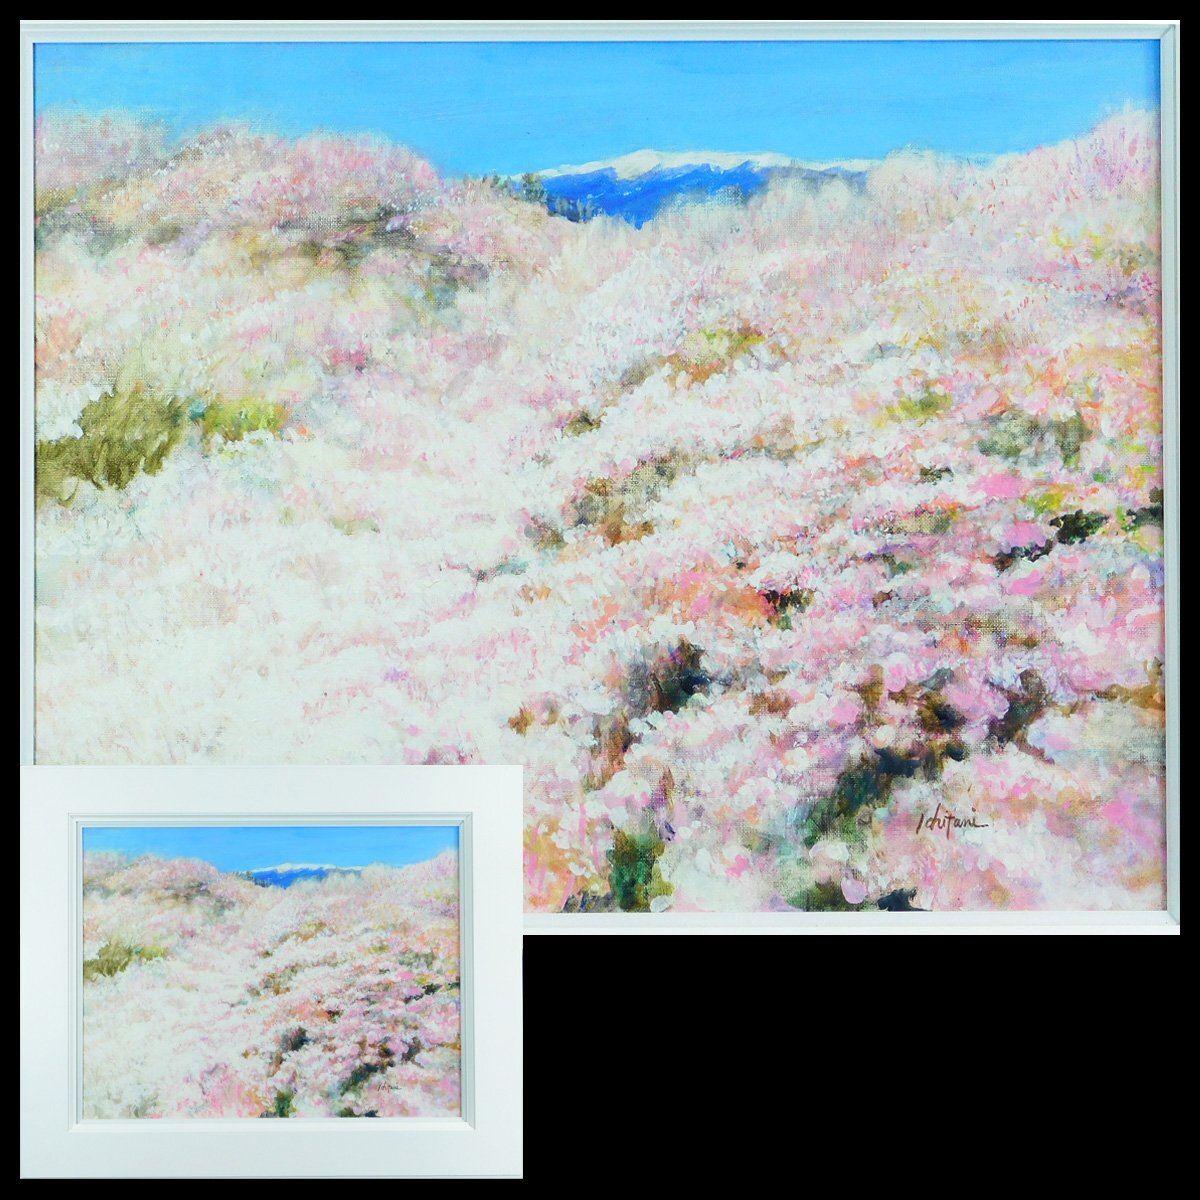 تاكايوشي إيتشيتاني أزهار الكرز في لوحة زيتية قماشية تاكاتو P10 فنان معرض منفرد مؤطر نشط في يوكوهاما ka240323, تلوين, طلاء زيتي, طبيعة, رسم مناظر طبيعية